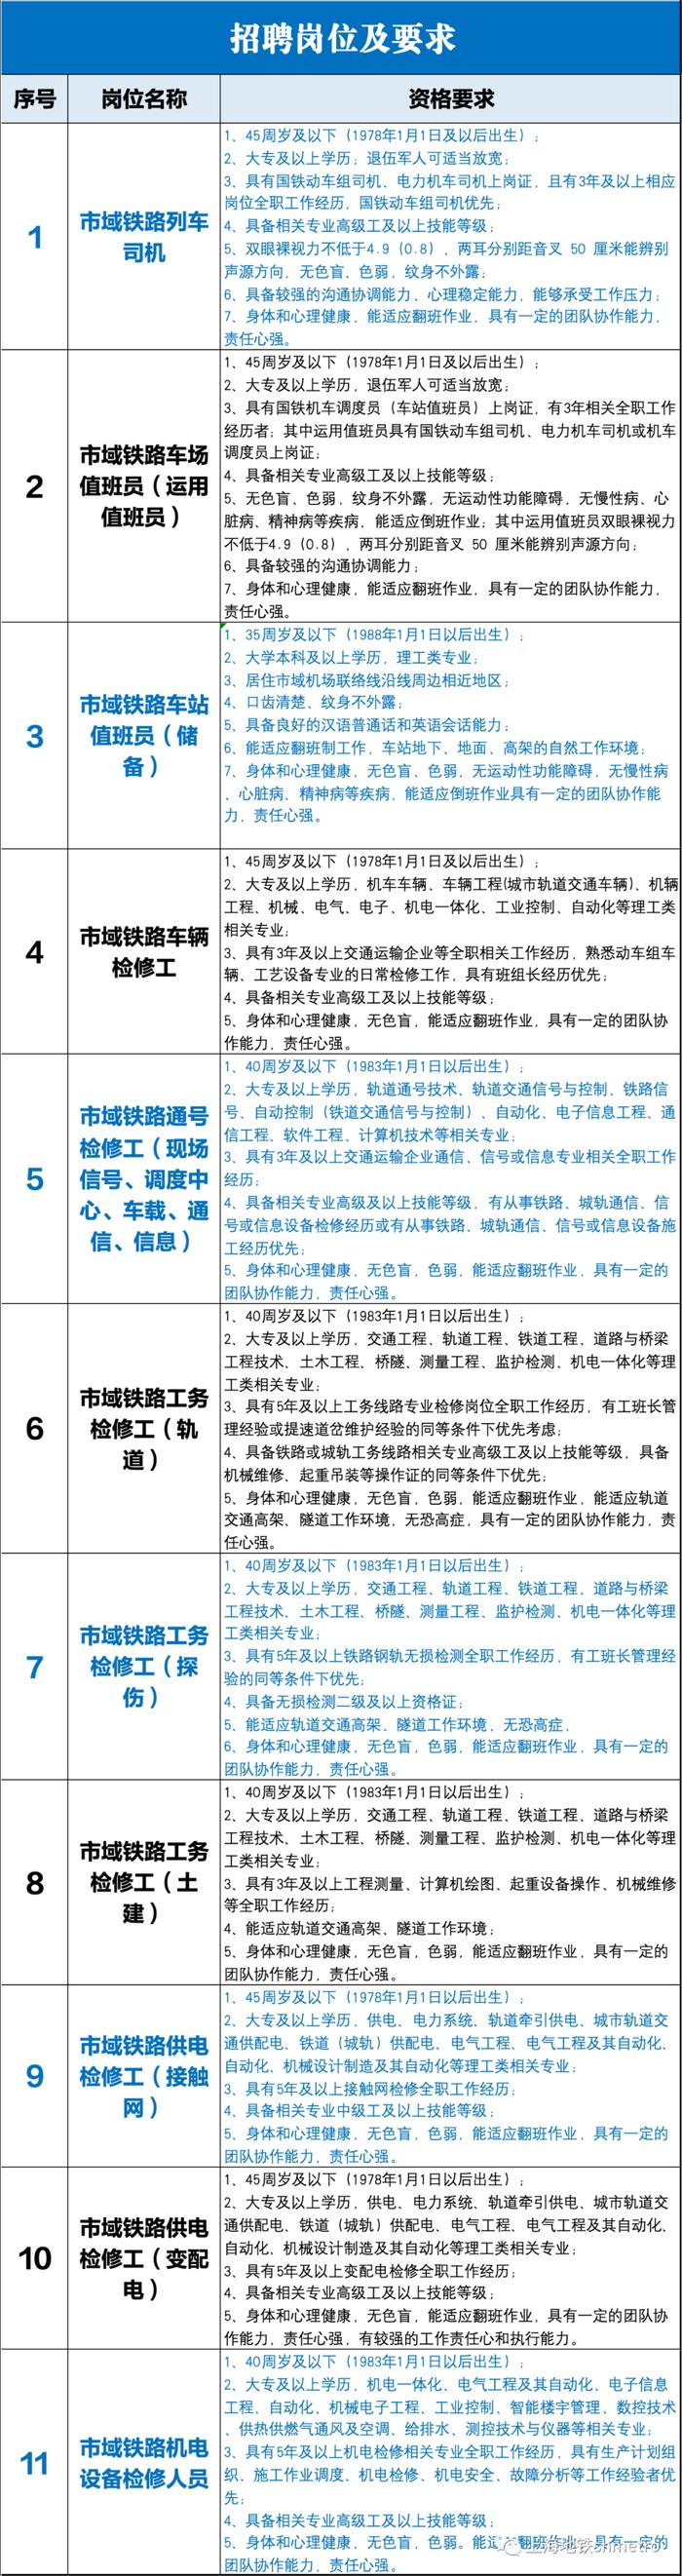 【就业】上海市域铁路运营公司招聘若干名工作人员，10月30日前报名